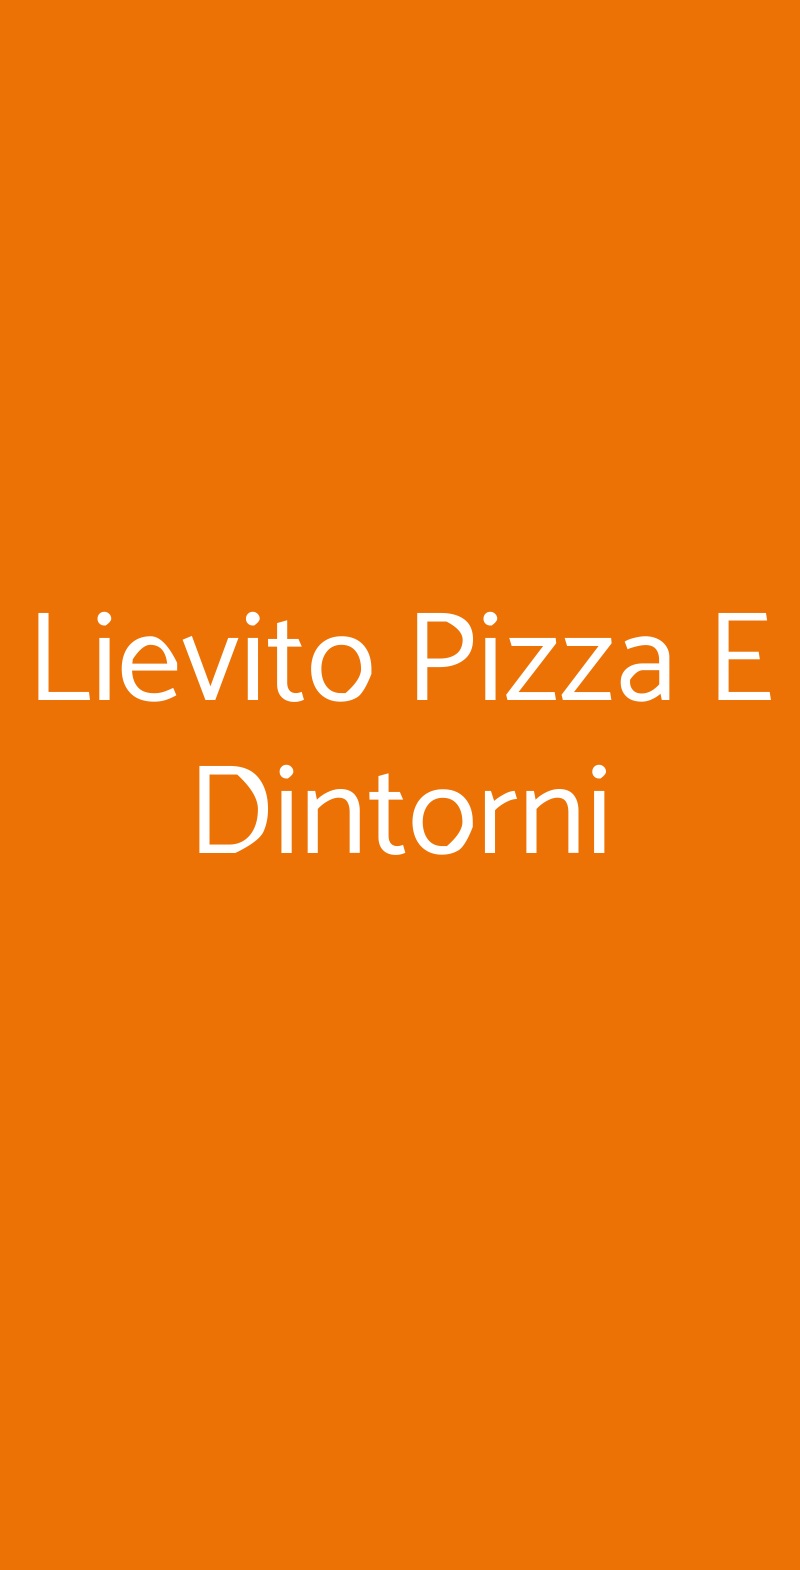 Lievito Pizza E Dintorni Bari menù 1 pagina